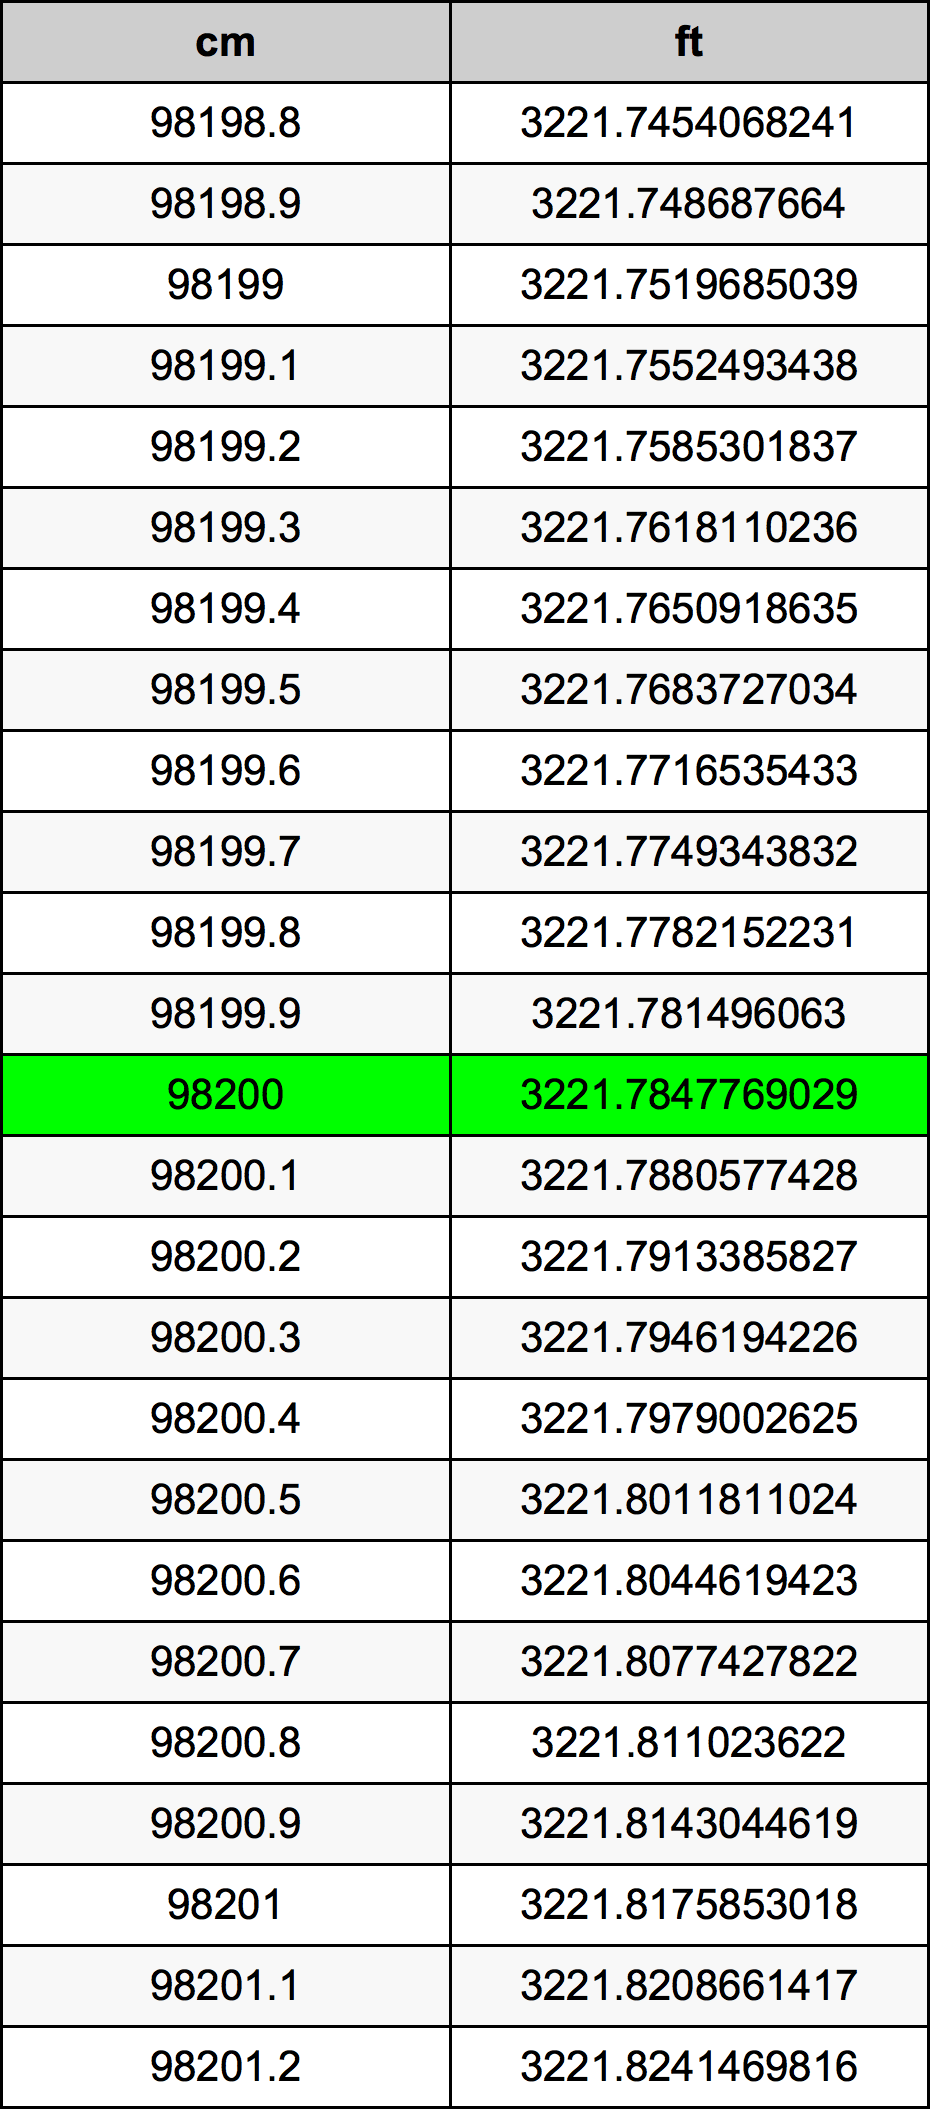 98200 ċentimetru konverżjoni tabella